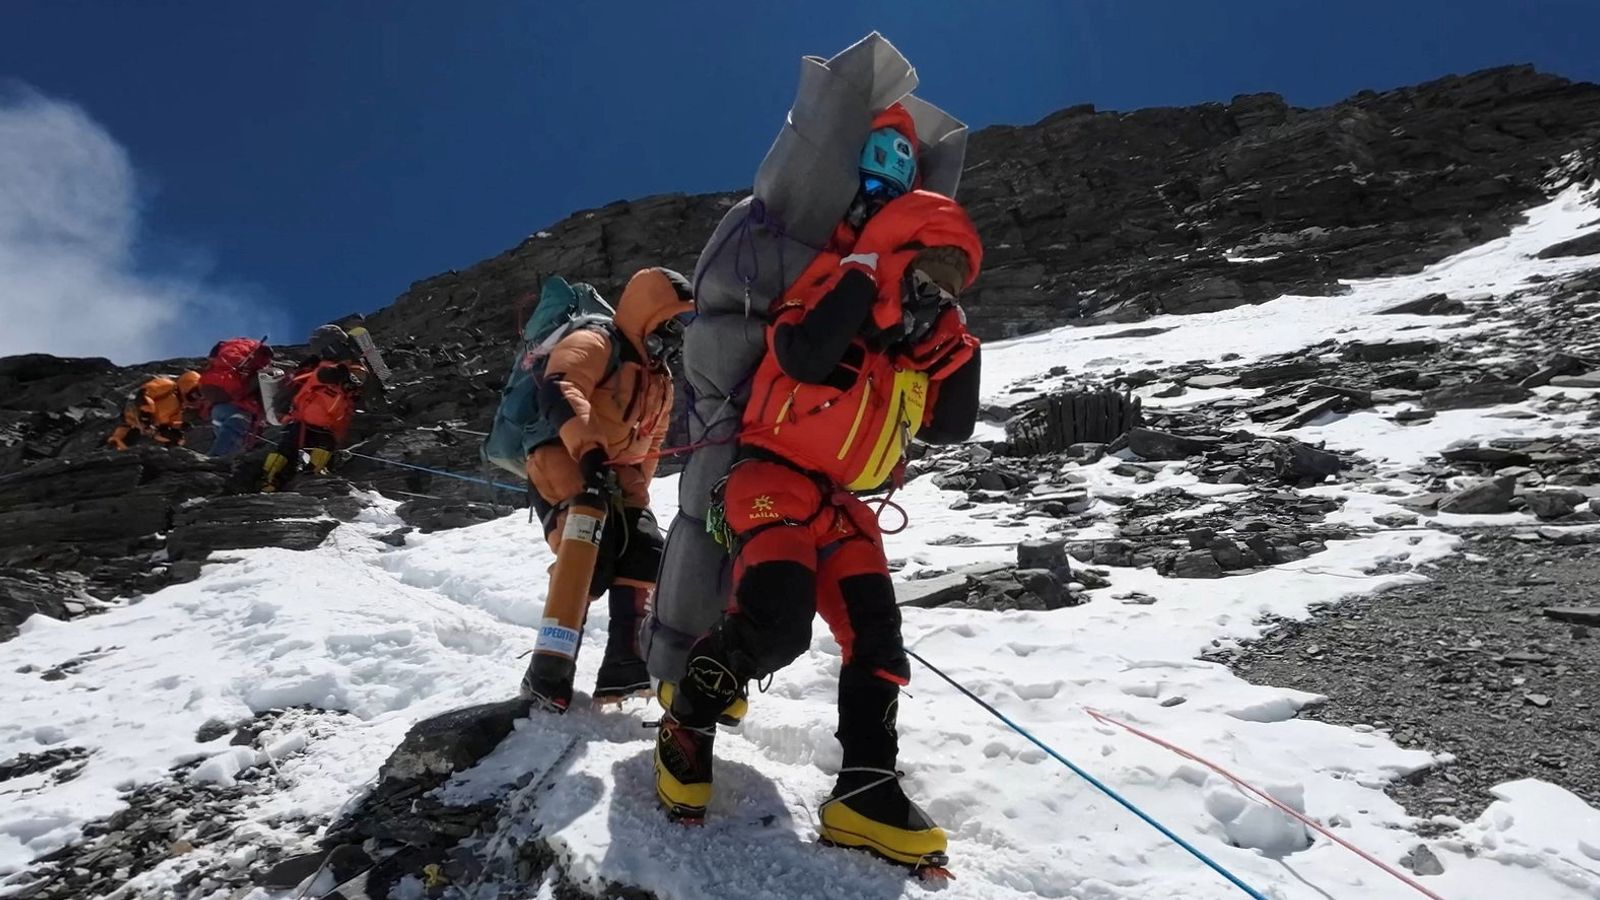 シェルパ、「不可能に近い」ミッションで凍りついた救助登山者をエベレストの「死のゾーン」から脱出させる | シェルパ世界のニュース